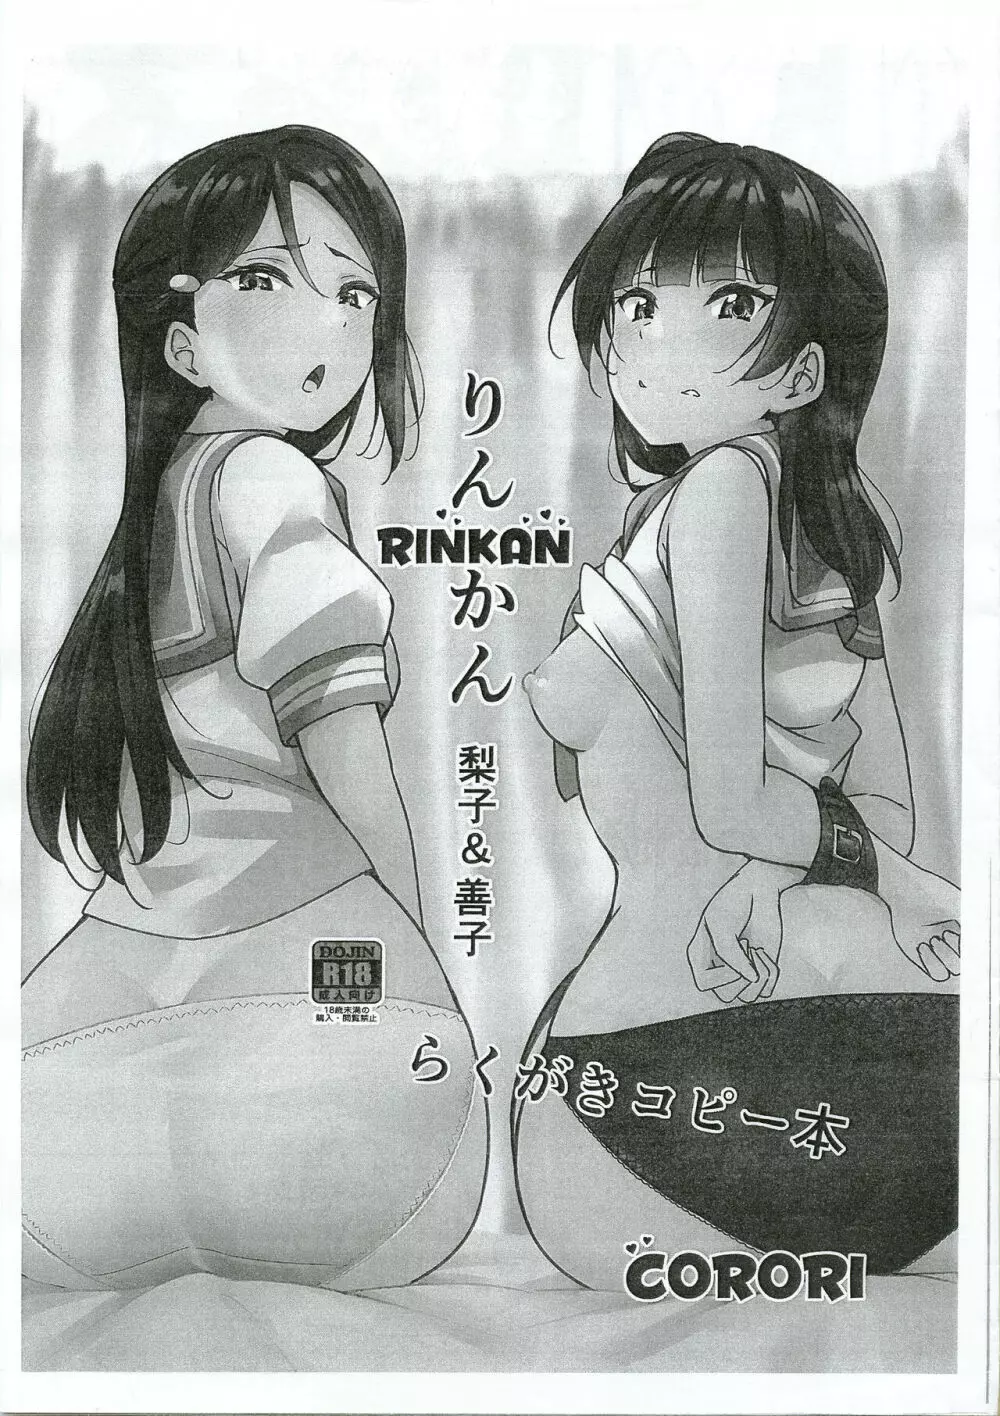 Rinkan 梨子と善子 らくがきコピー本